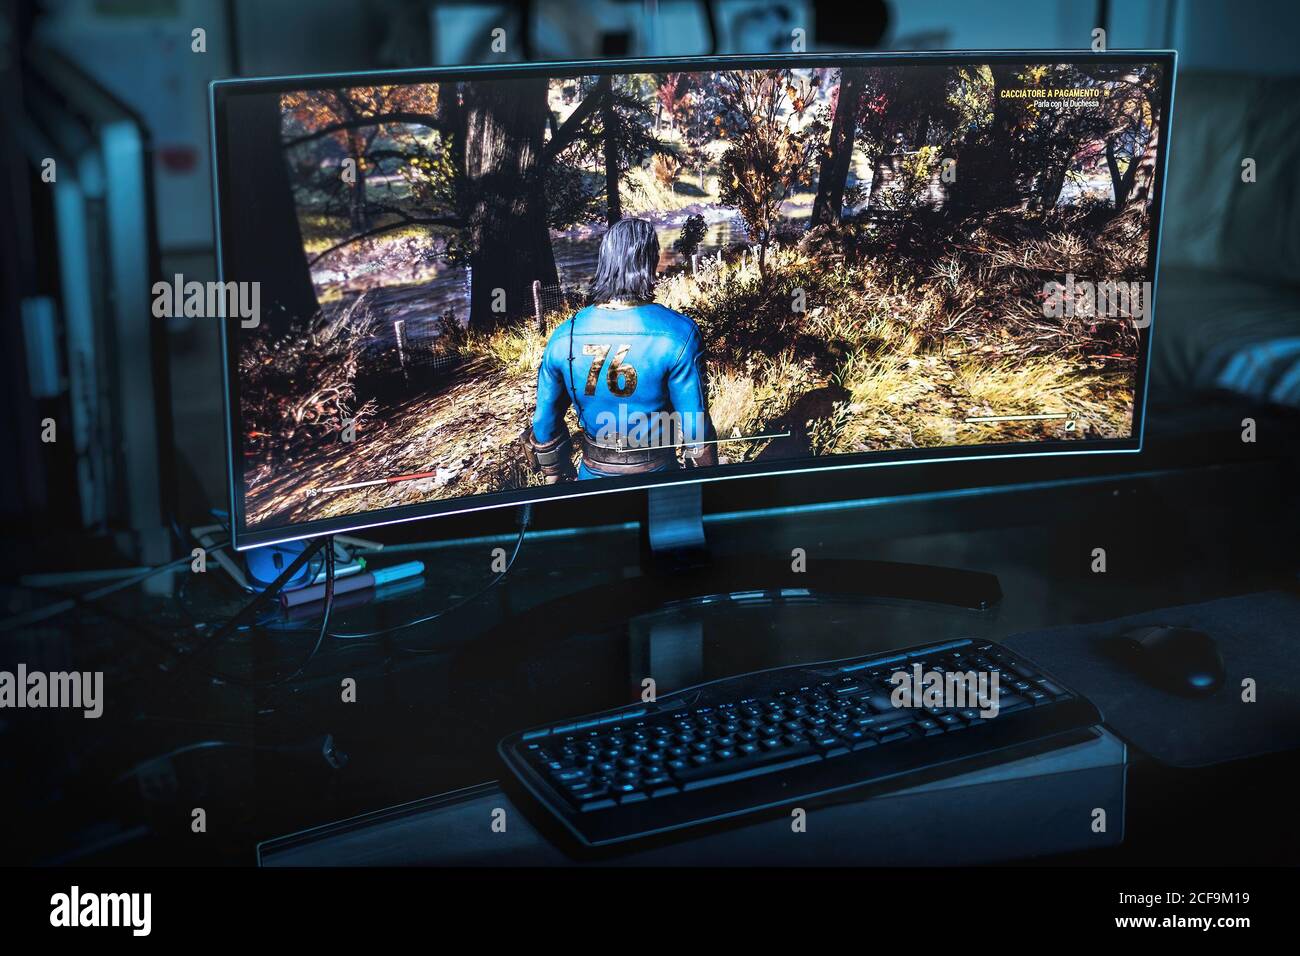 PC-Gaming-Konzept - ein ultrabreiter Bildschirm auf einem dunklen Raum mit dem Fallout 76 Spiel auf ihm in Bologna, Italien, 04 September 2020 - illustrative Editorial Stockfoto